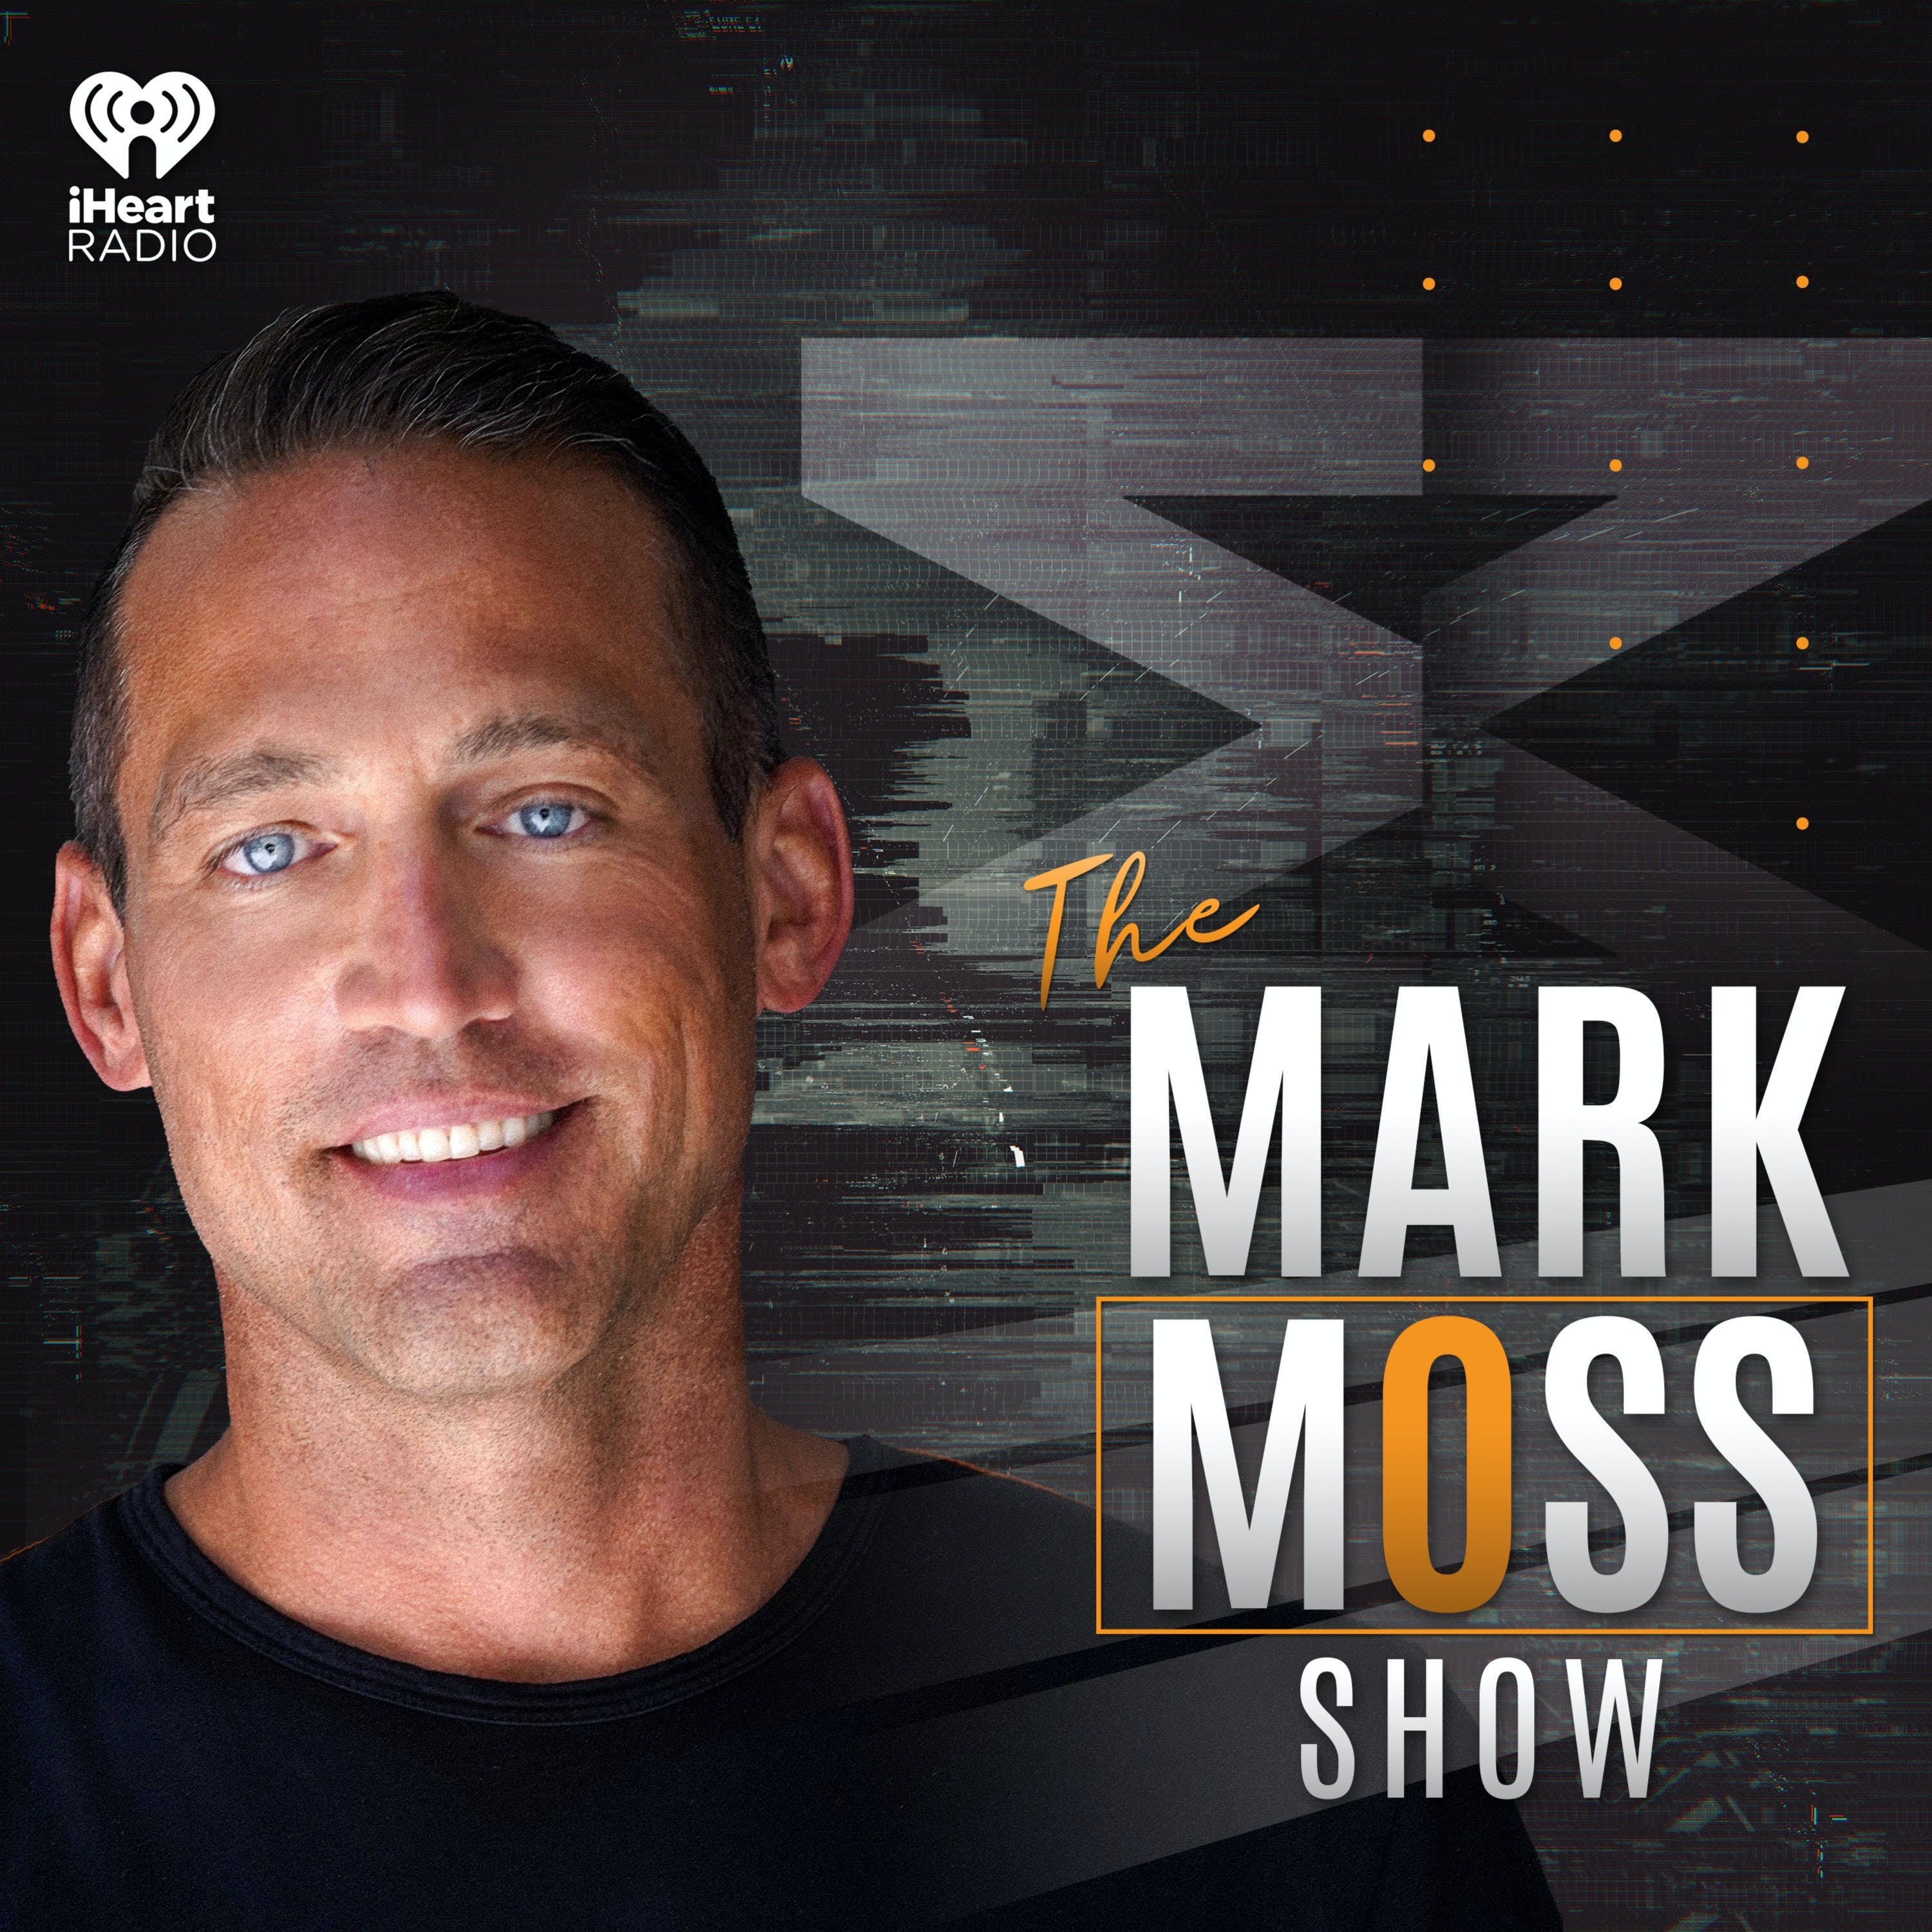 The Mark Moss Show Oct 20, 2021